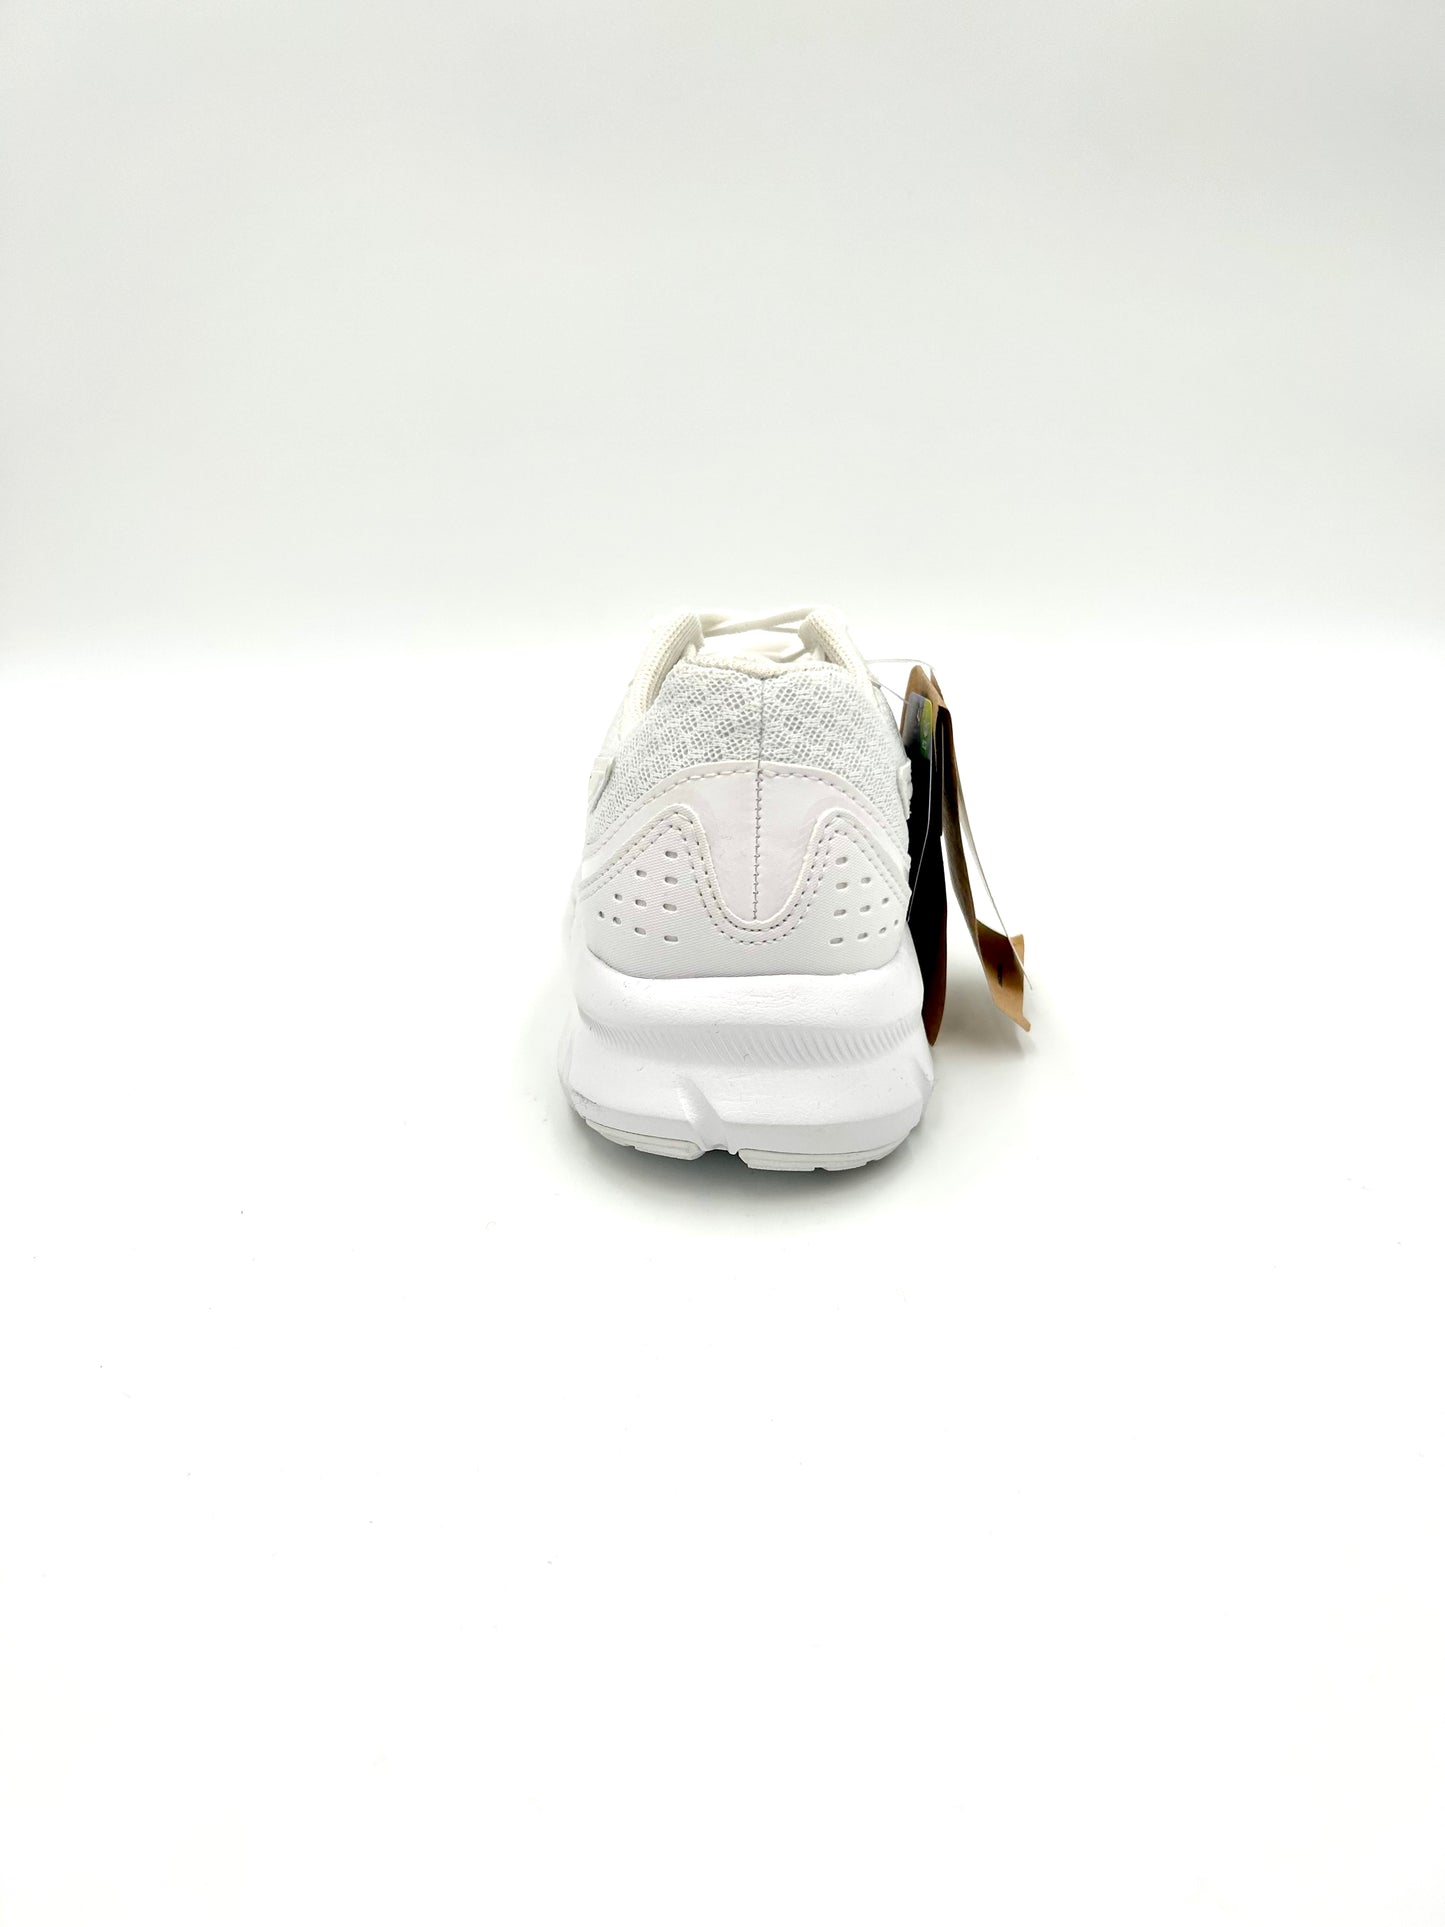 Asics Sneakers Jolt 3 - total white - Asics